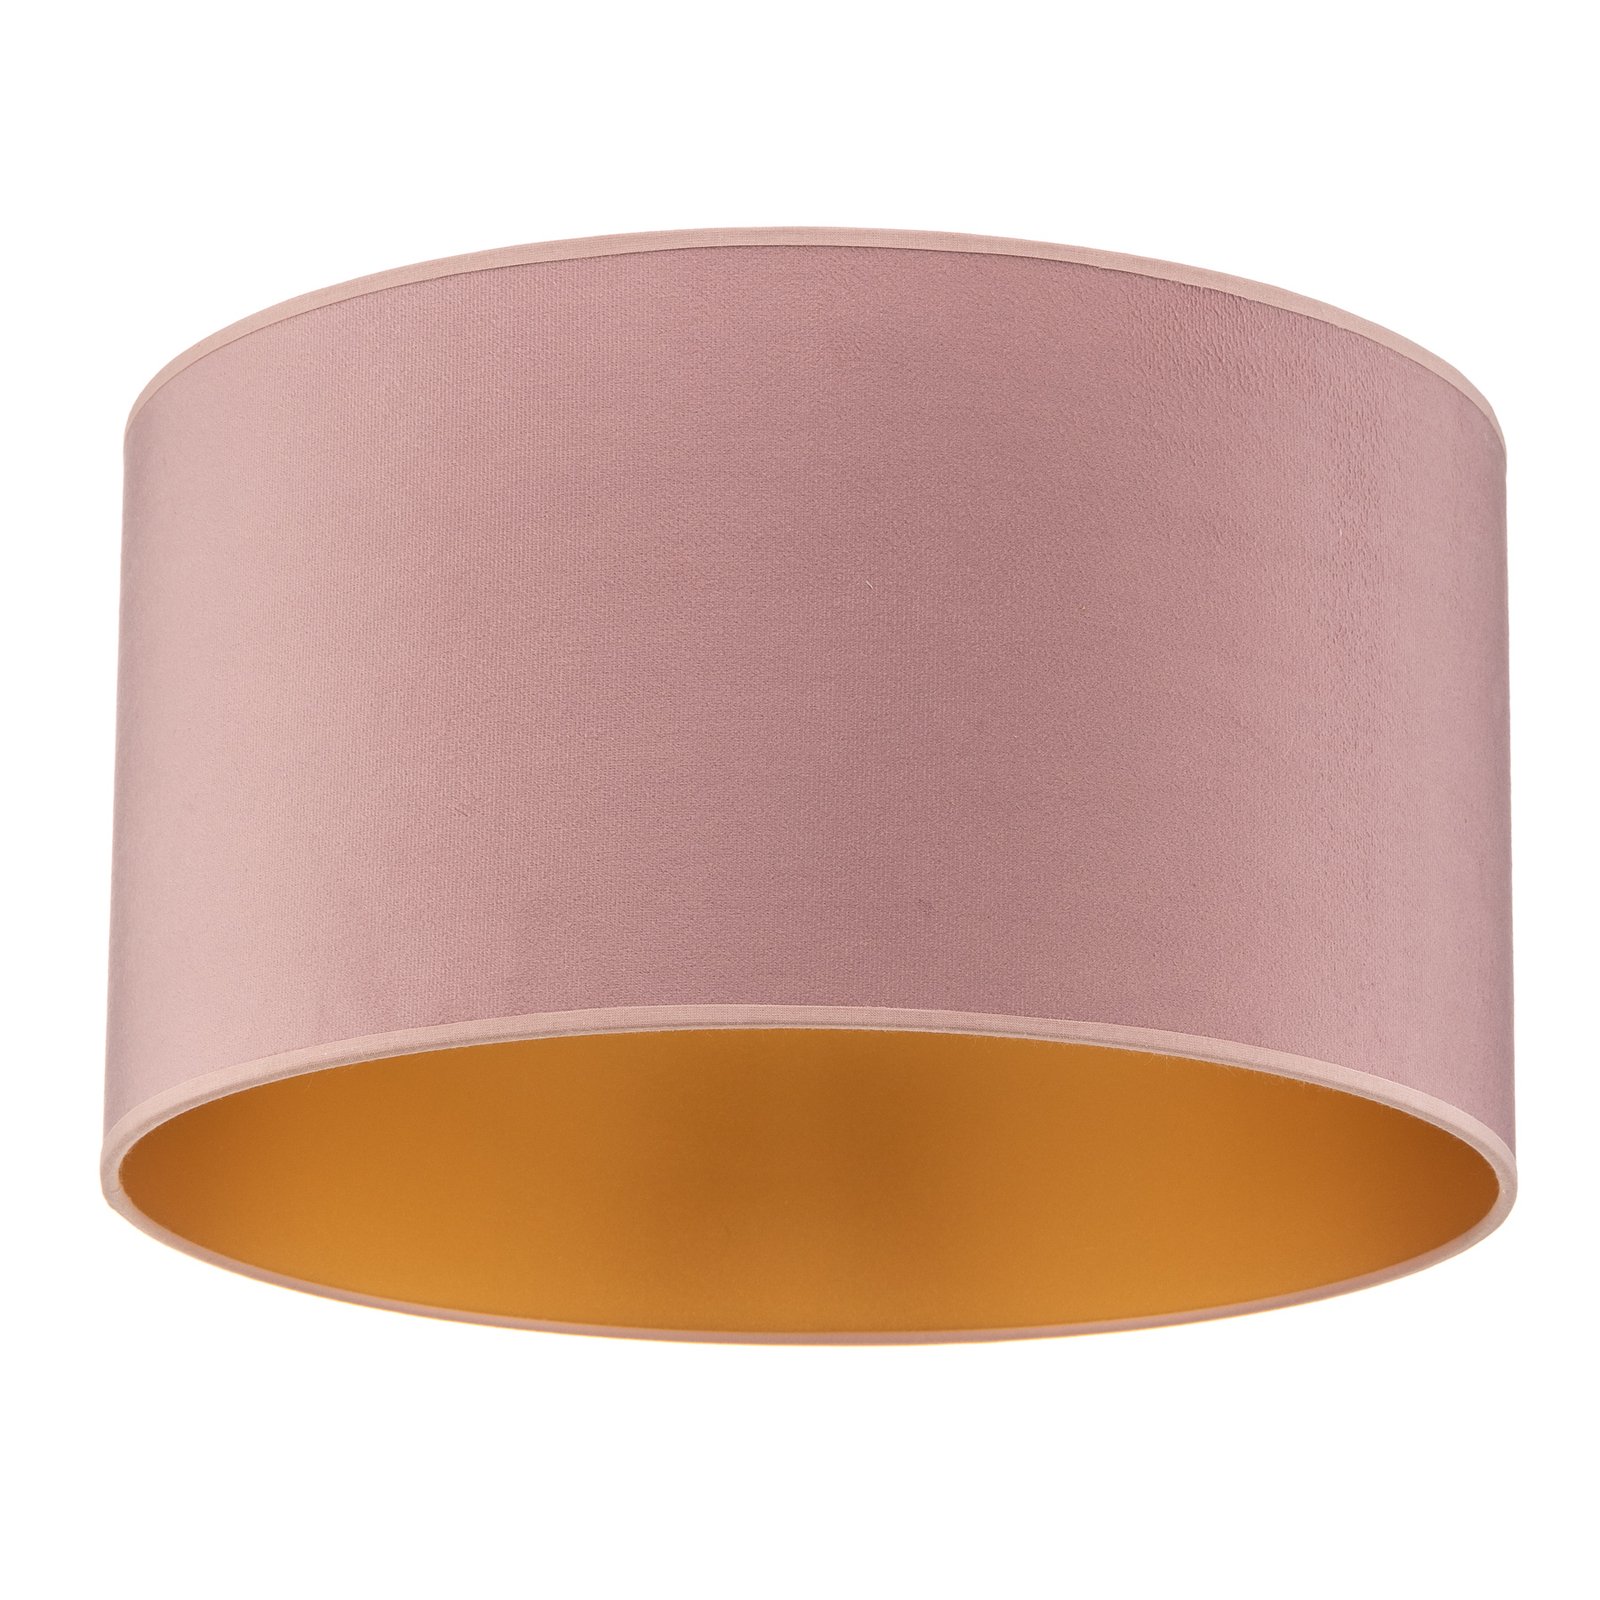 Lubų šviestuvas Golden Roller Ø 40cm šviesiai rožinis/auksinis